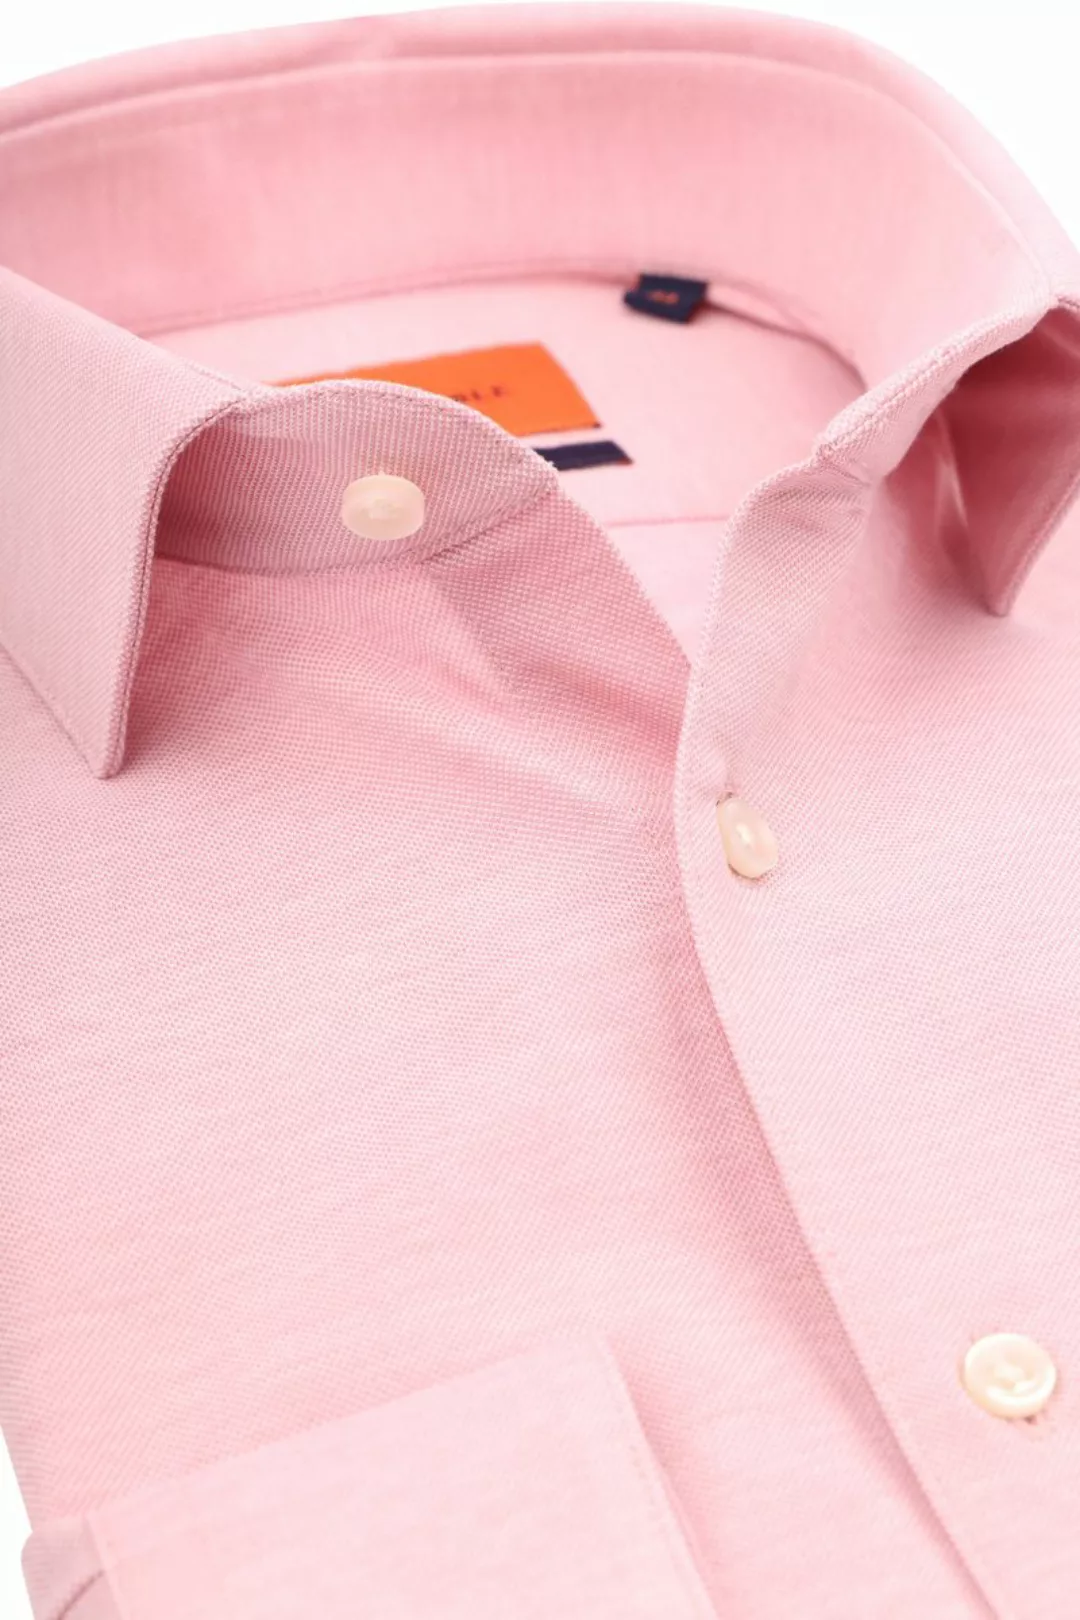 Suitable Hemd Knitted Pique Rosa - Größe 41 günstig online kaufen